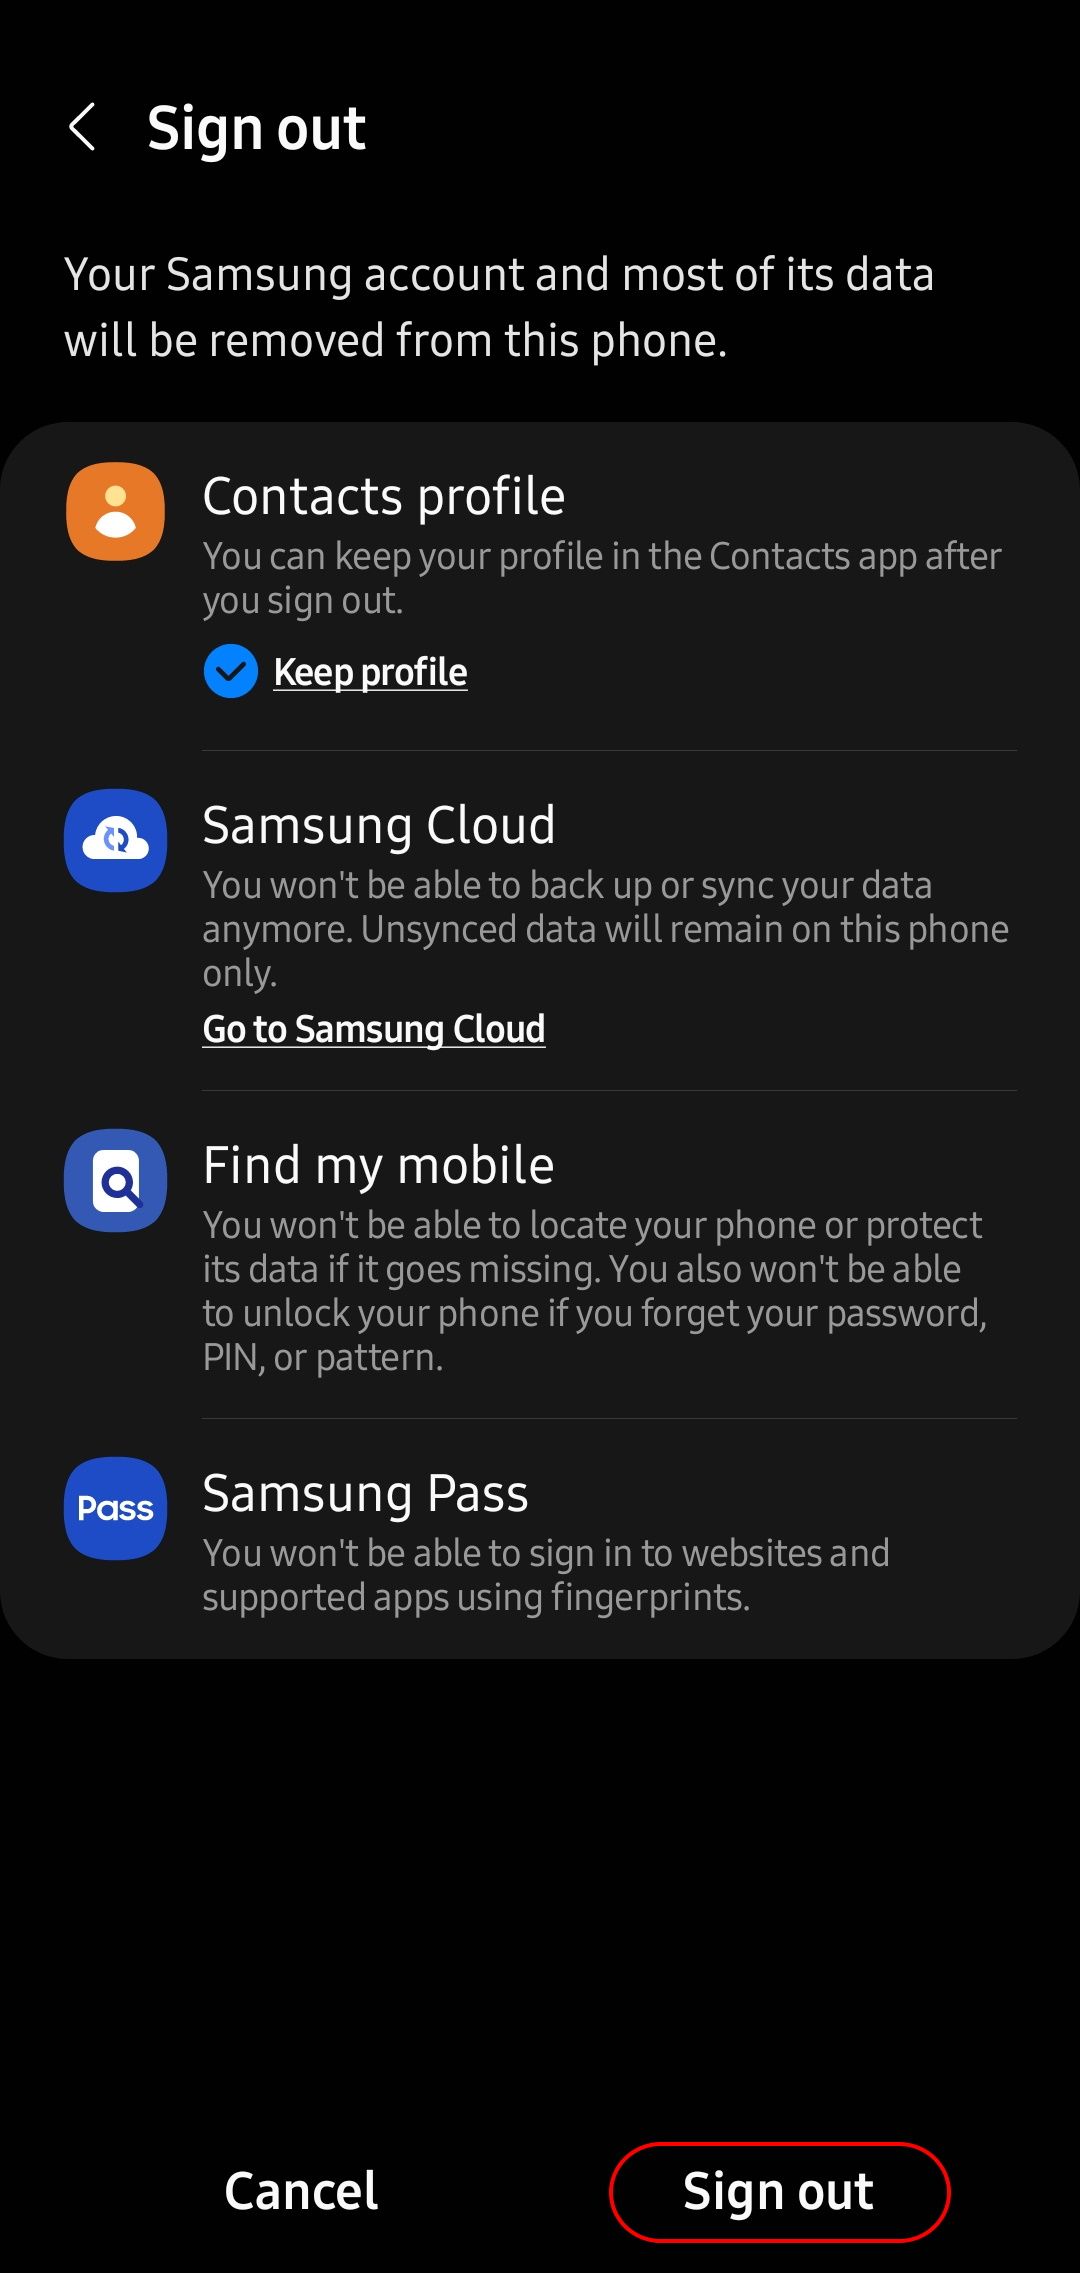 página de confirmação de logout da conta Samsung com o botão de logout destacado